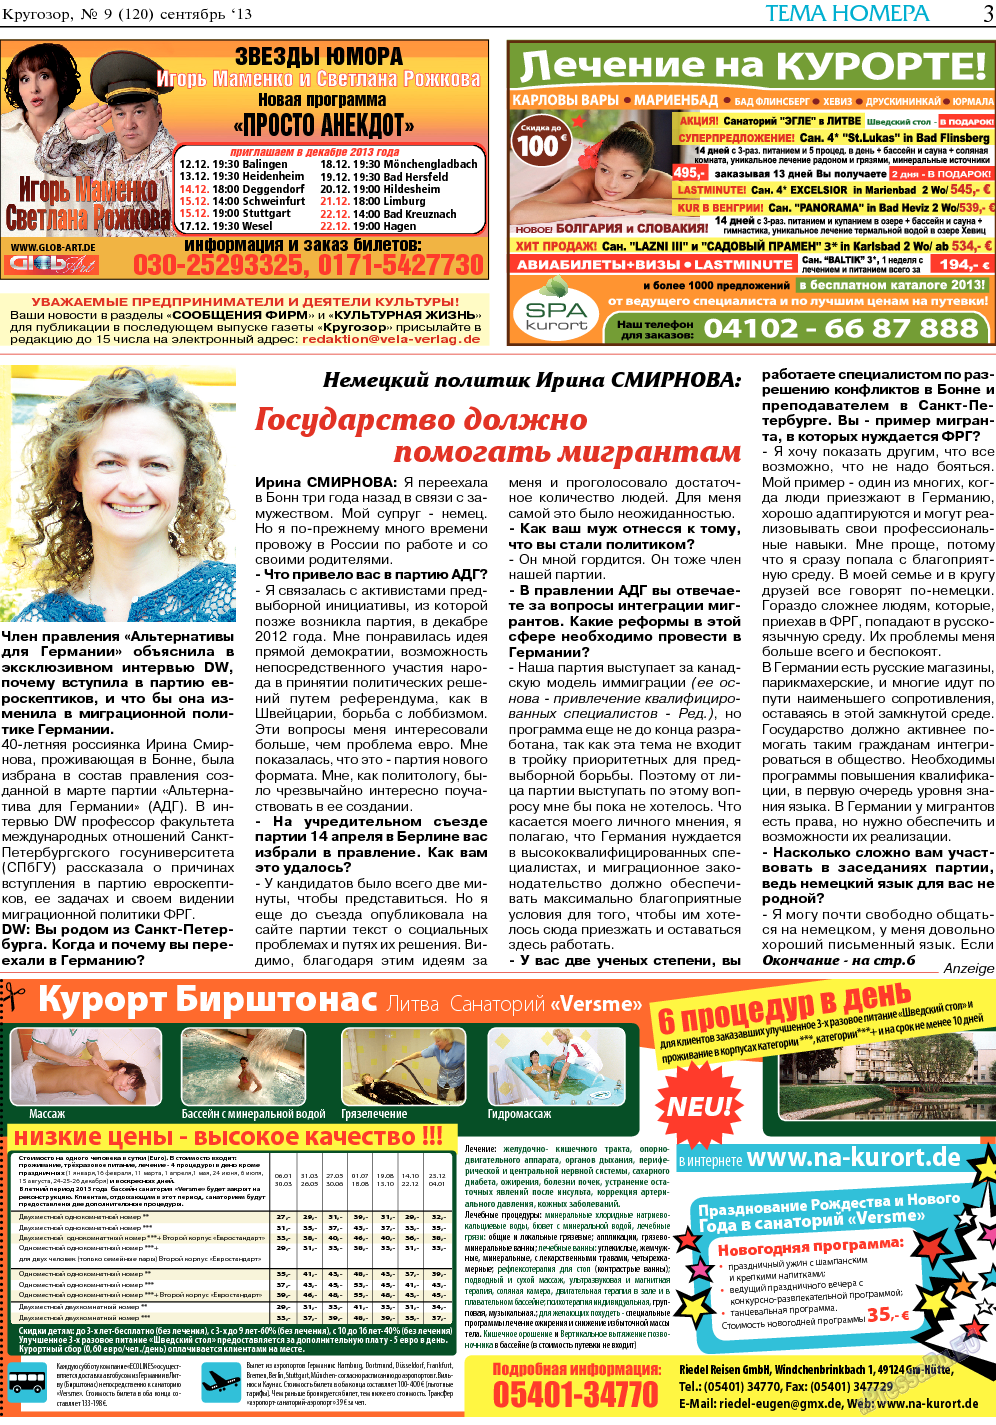 Кругозор, газета. 2013 №9 стр.3